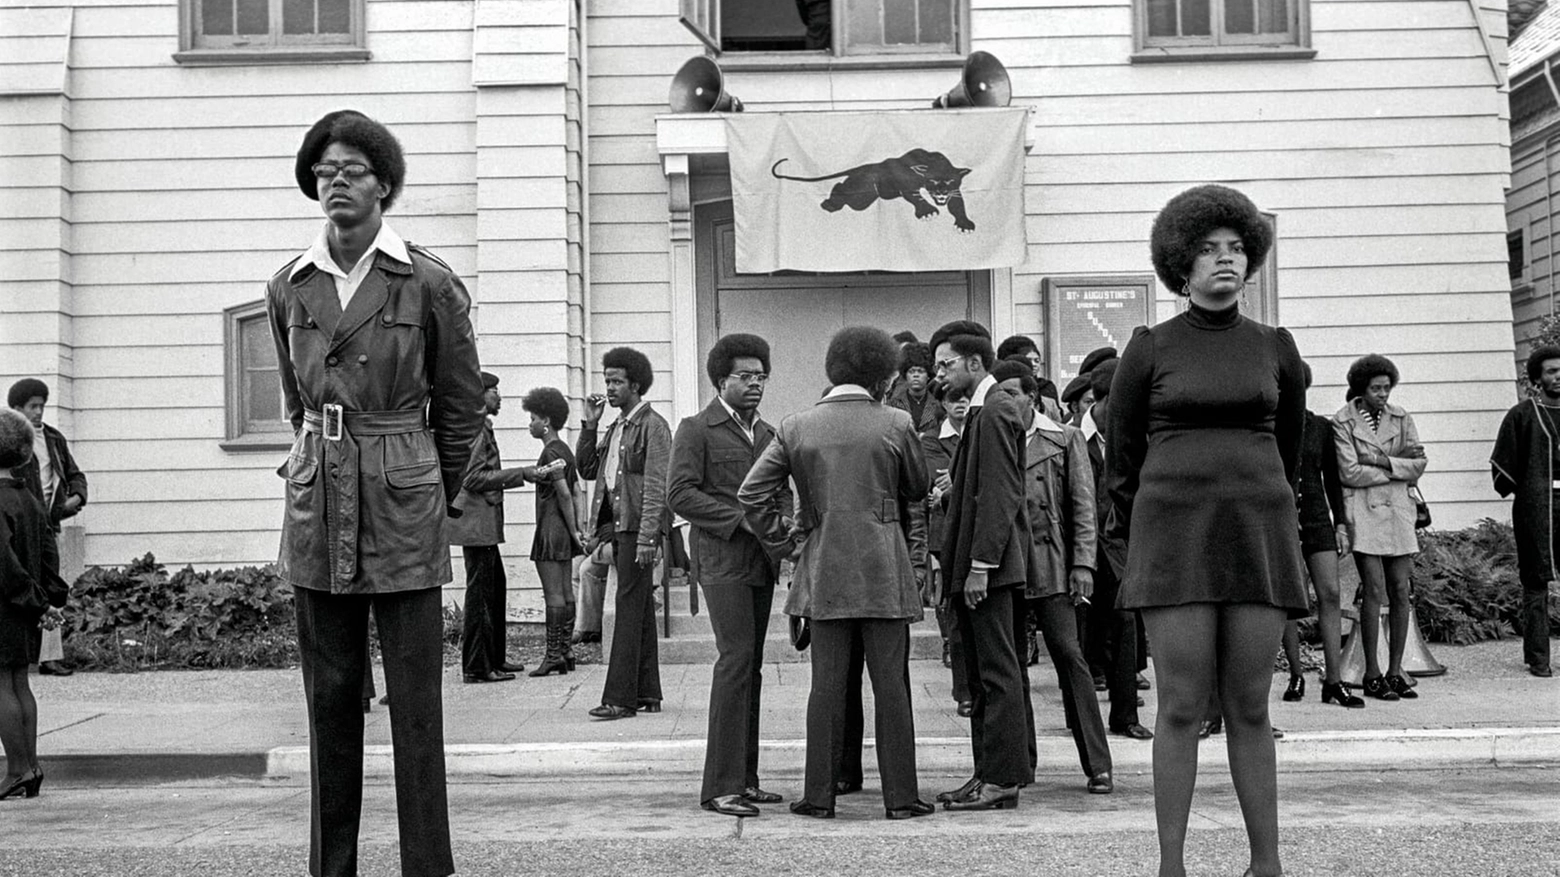 Le foto di Stephen Shames esposte in “Comrade Sisters: Women of the Black Panther Party”, l’eposizione al Centre de la Photographie di Mougins, aperta fino al 6 ottobre